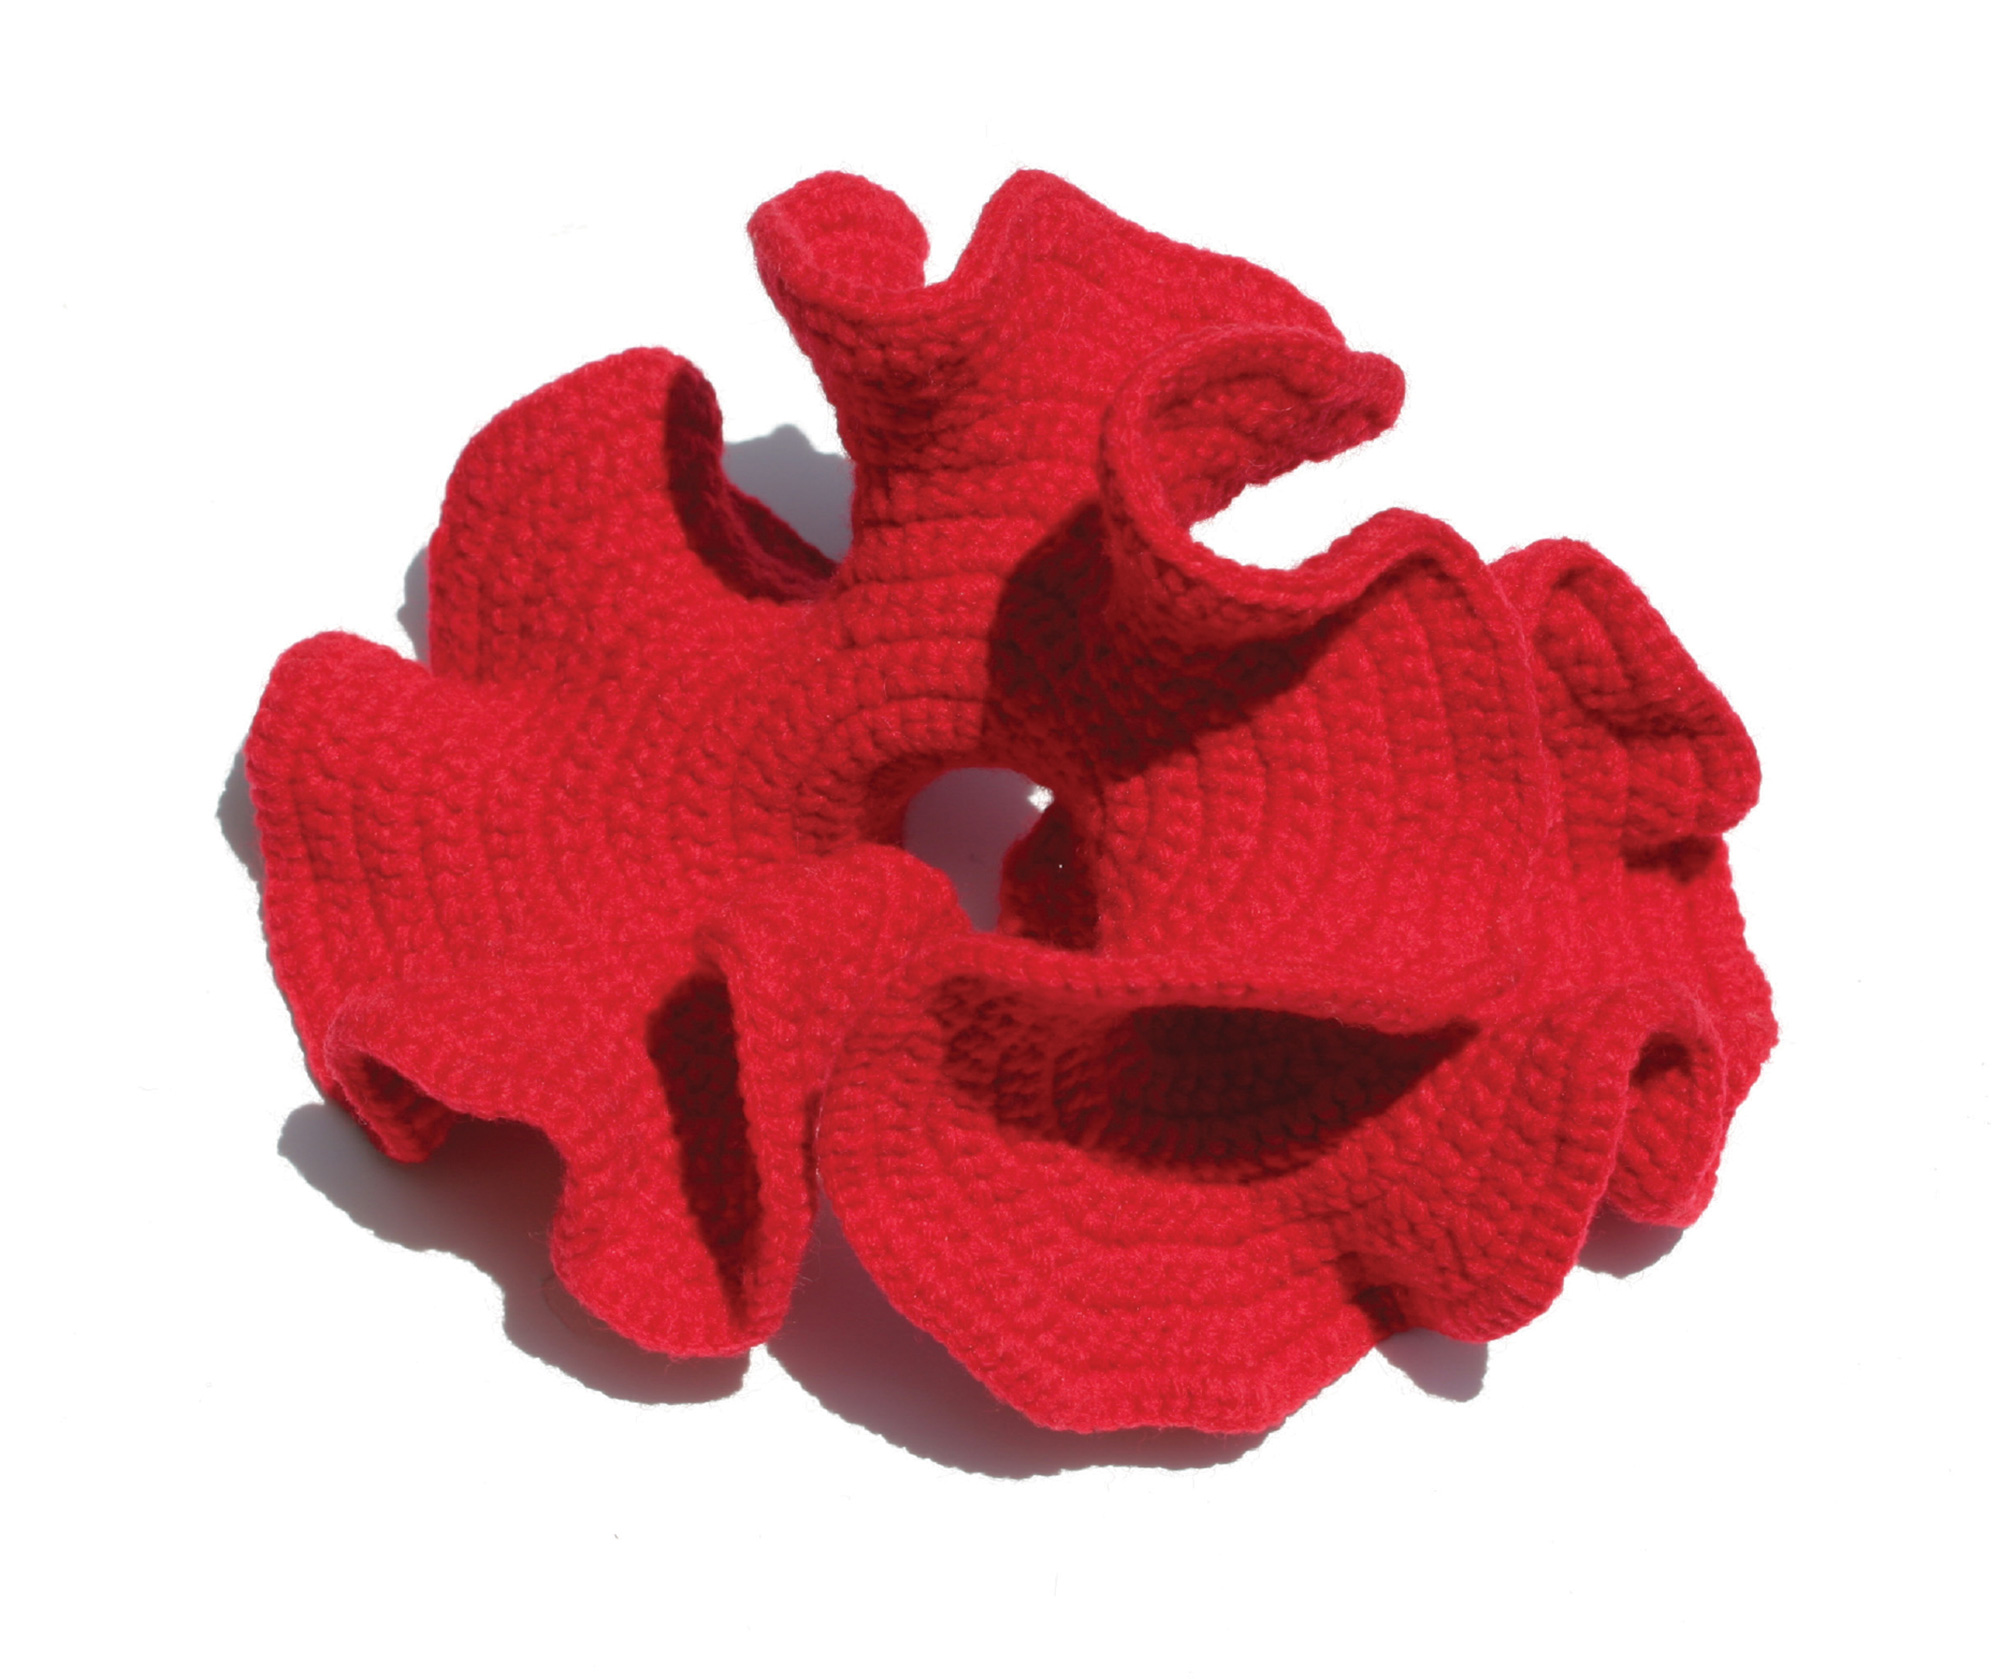 A hyperbolic form crocheted by Daina Taimina.